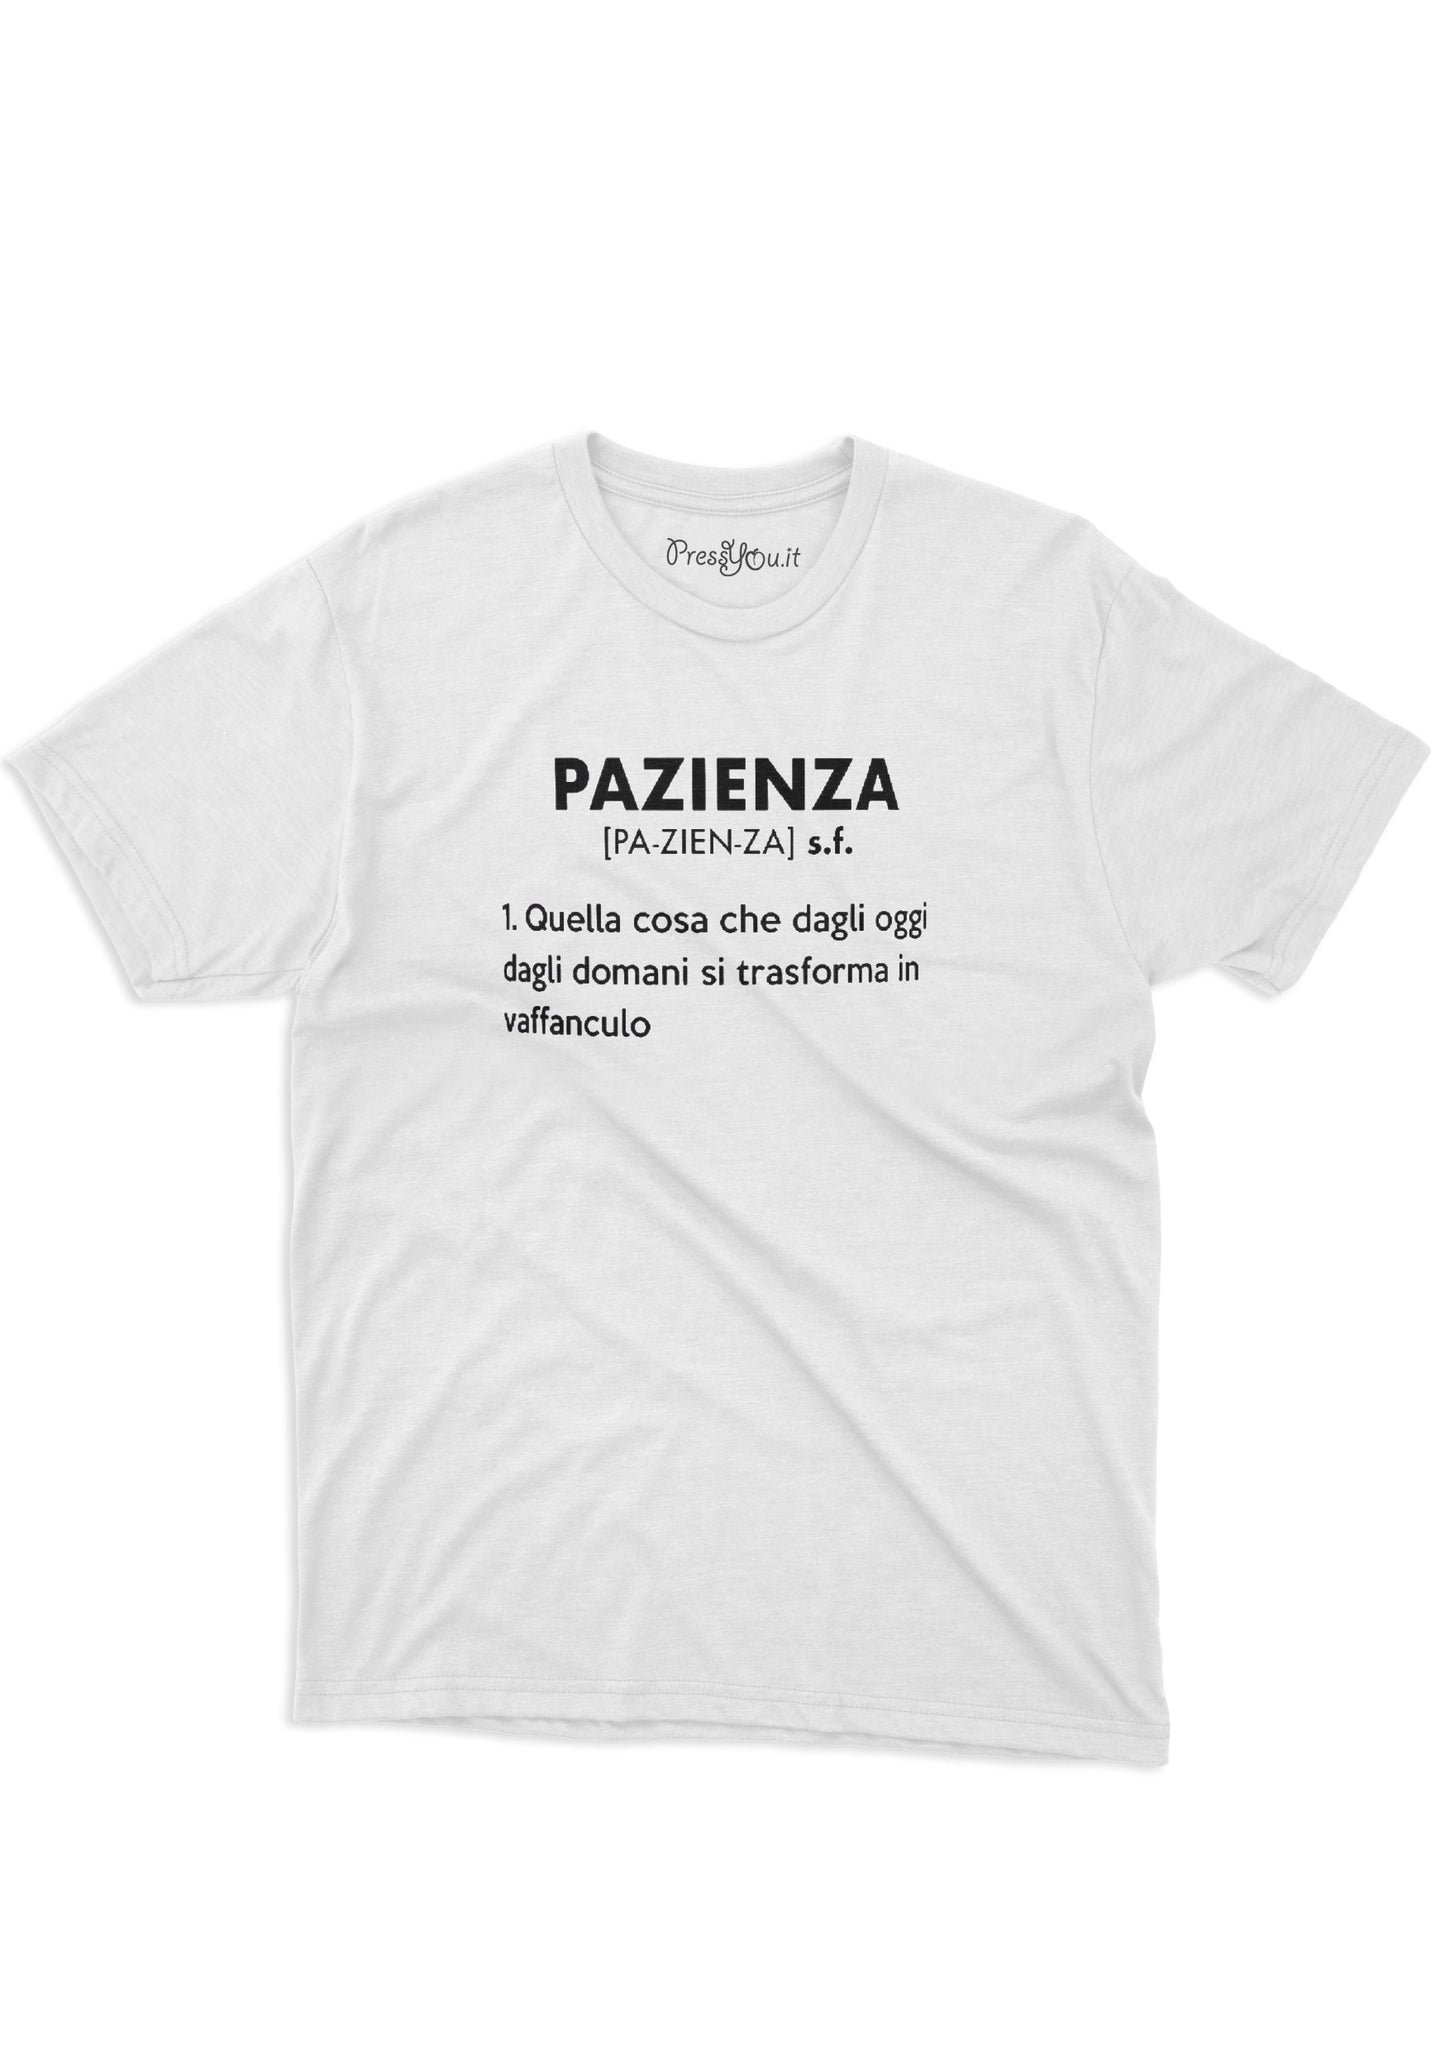 maglietta t-shirt-pazienza dizionario